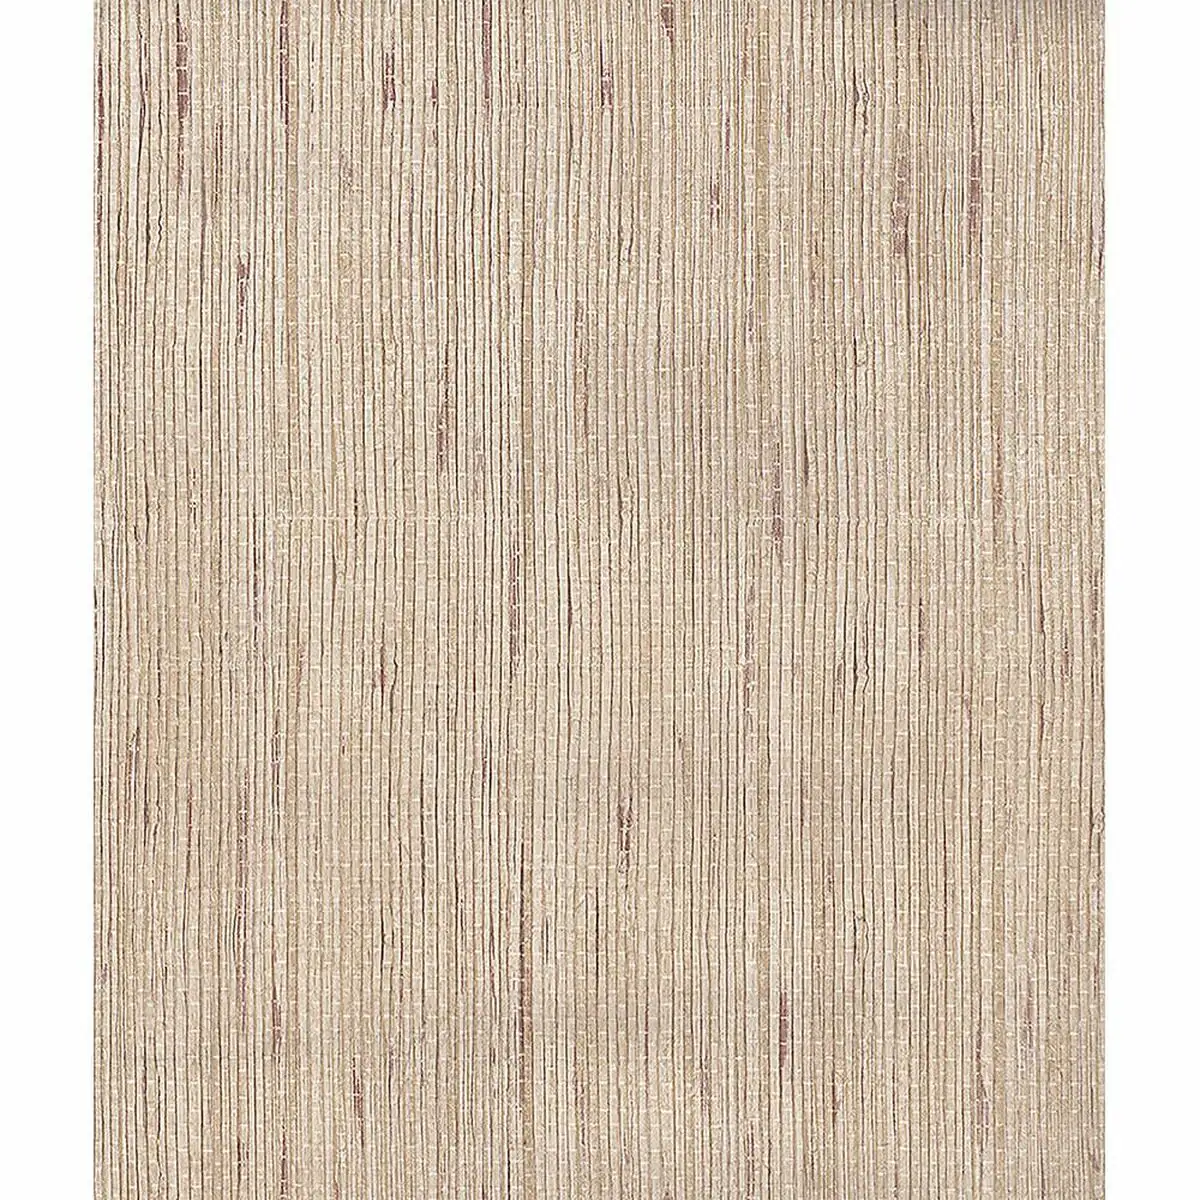 Papier peint ich wallpaper 25400 bambou marron 53 cm x 10 m_4804. DIAYTAR SENEGAL - Là où Vos Rêves Prendent Forme. Plongez dans notre catalogue diversifié et trouvez des produits qui enrichiront votre quotidien, du pratique à l'exceptionnel.